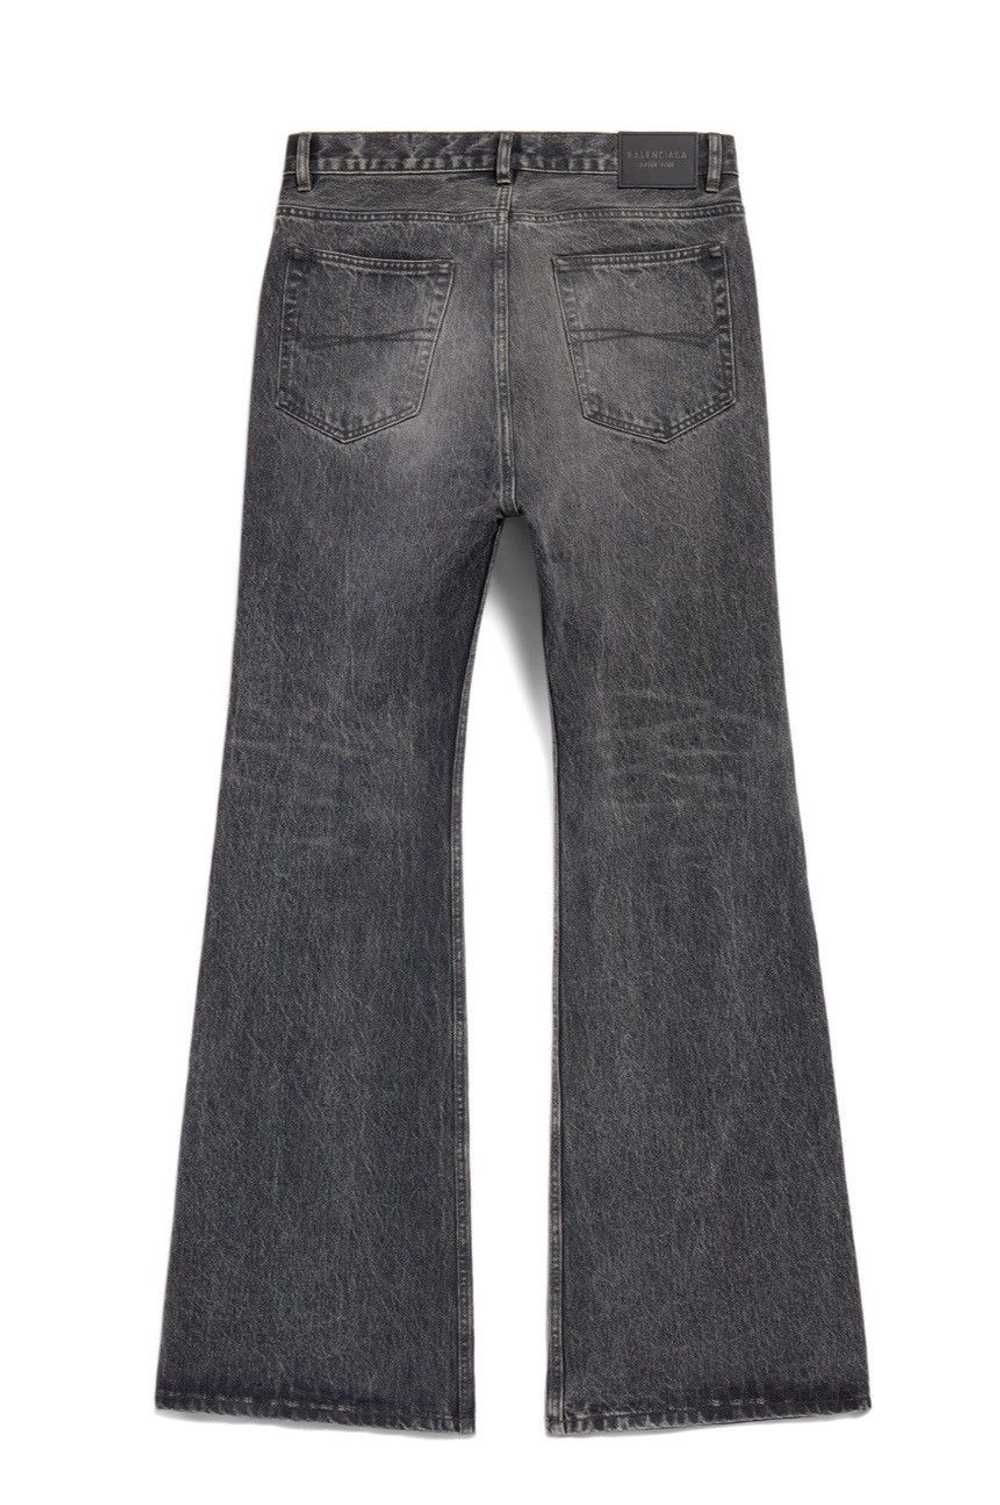 Balenciaga Boot cut pant jeans - image 2